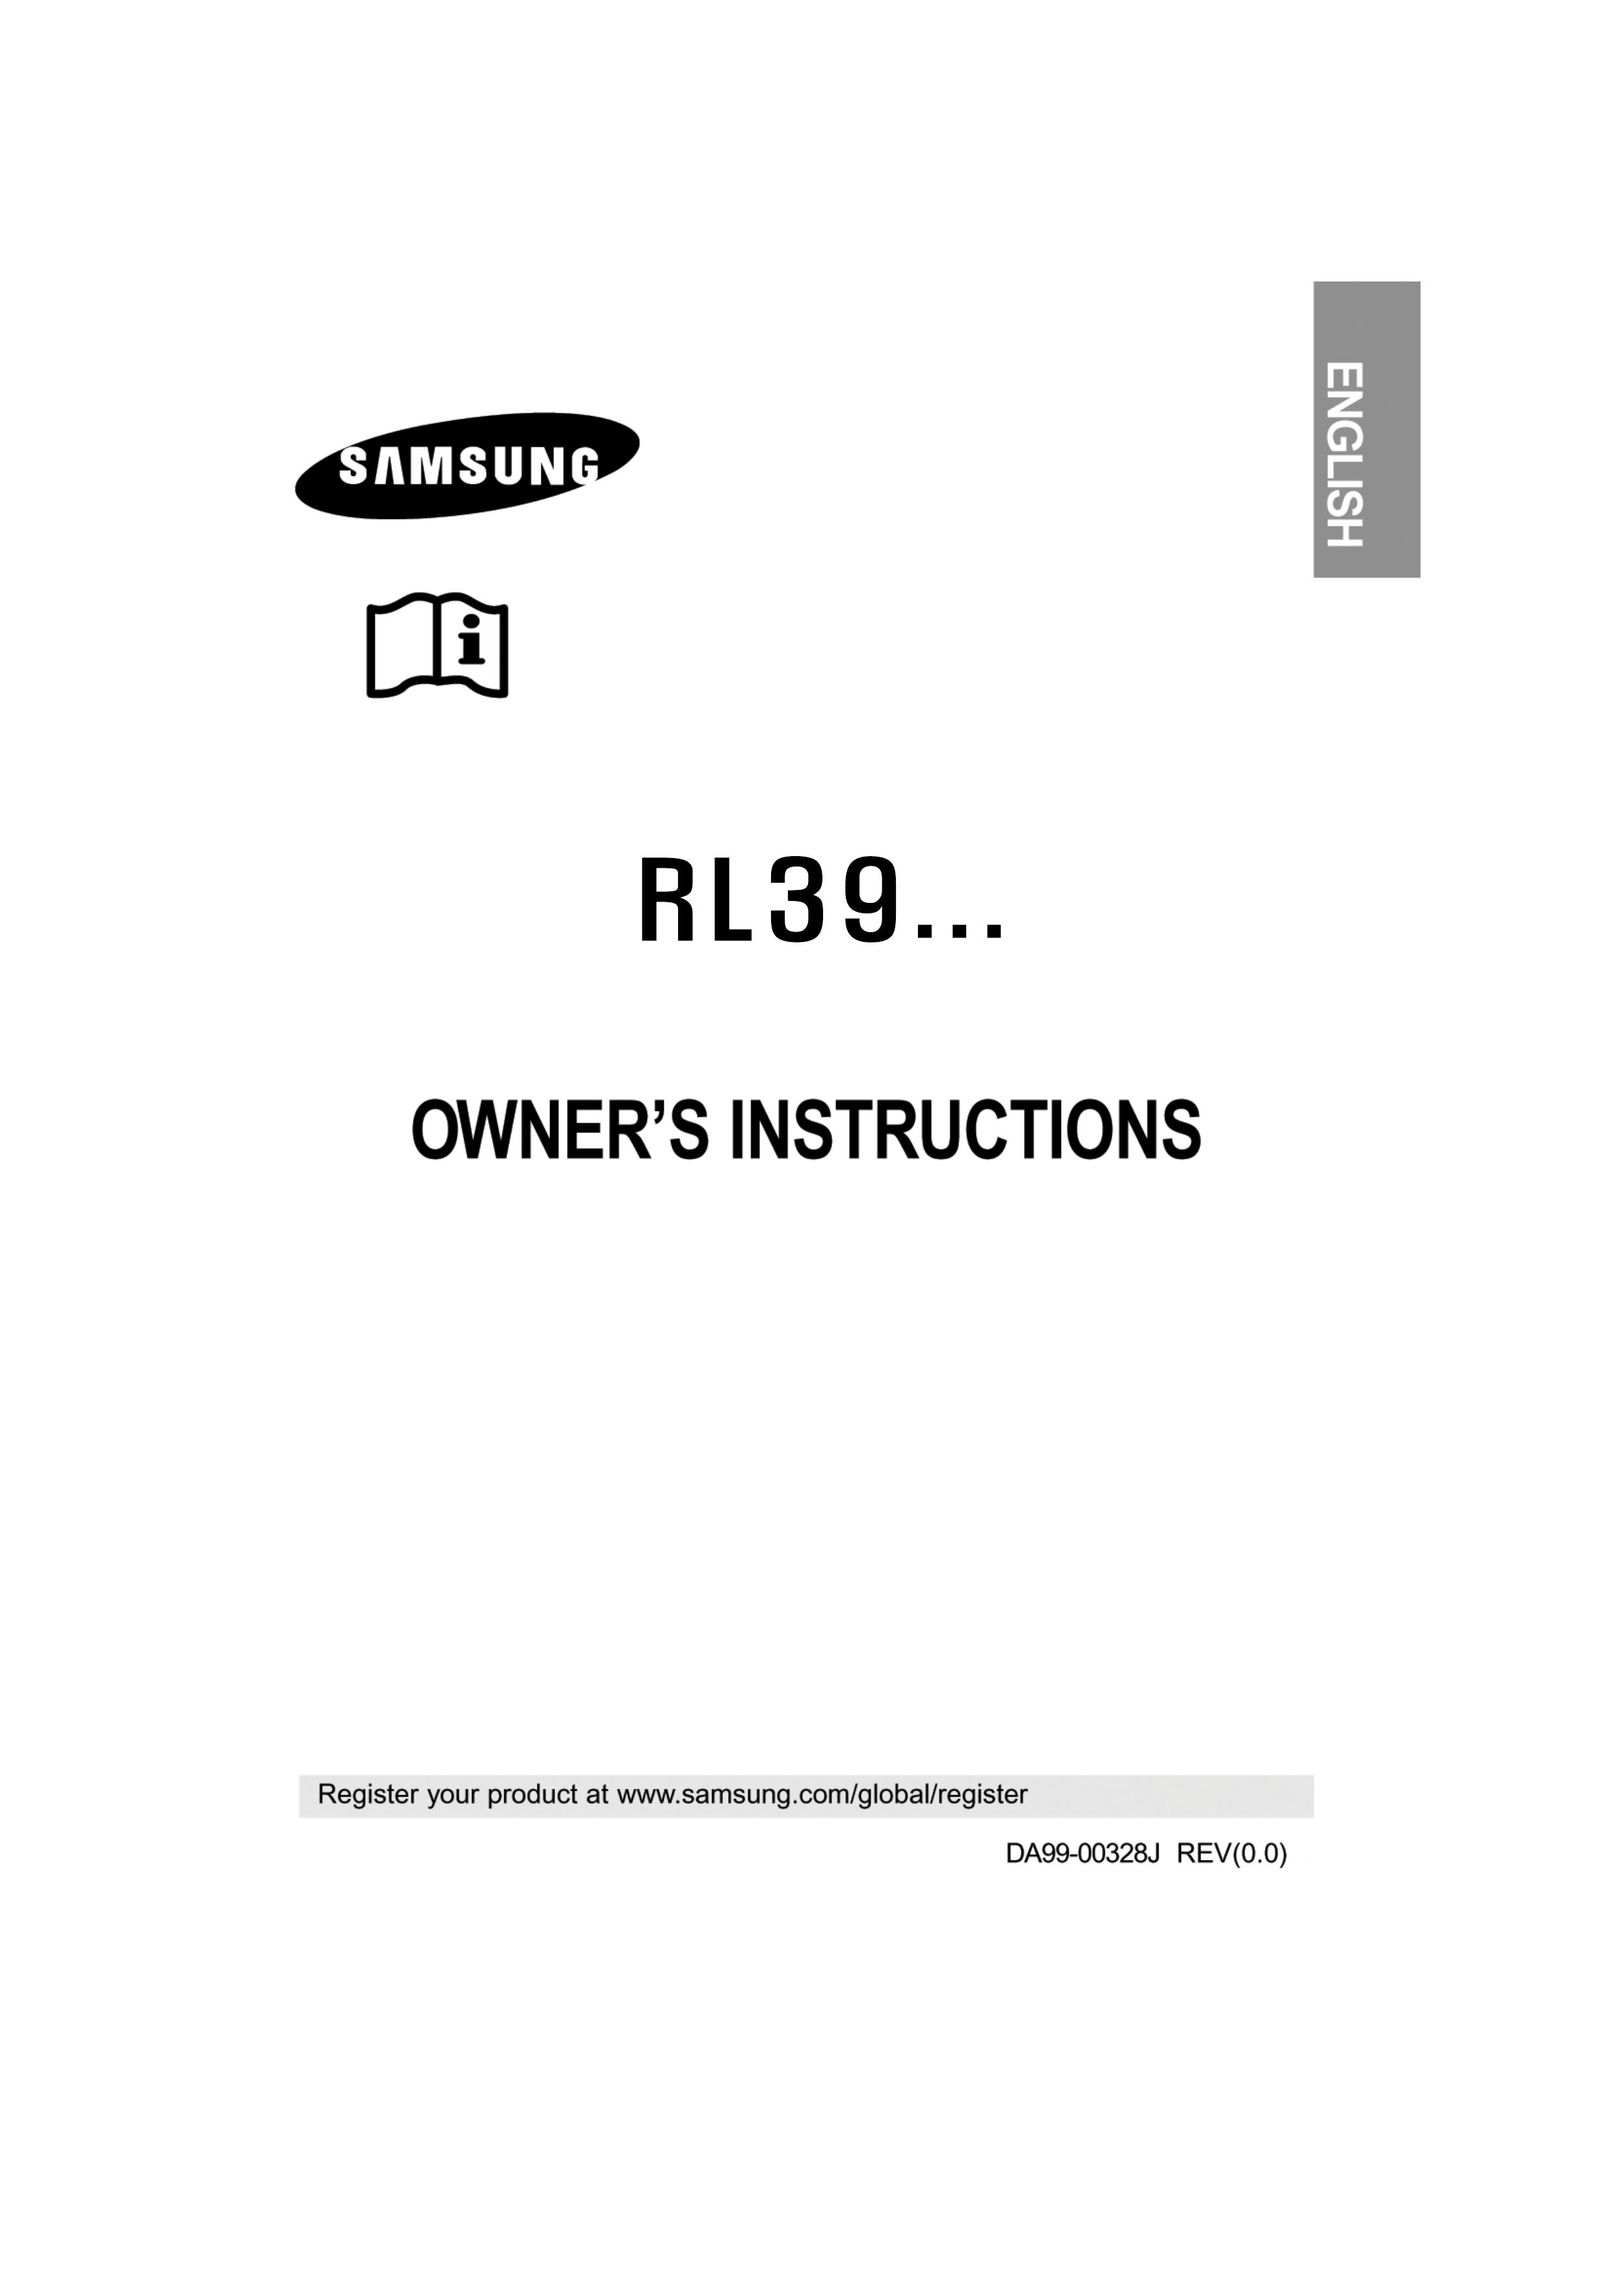 Samsung Rl 39 Freezer User Manual